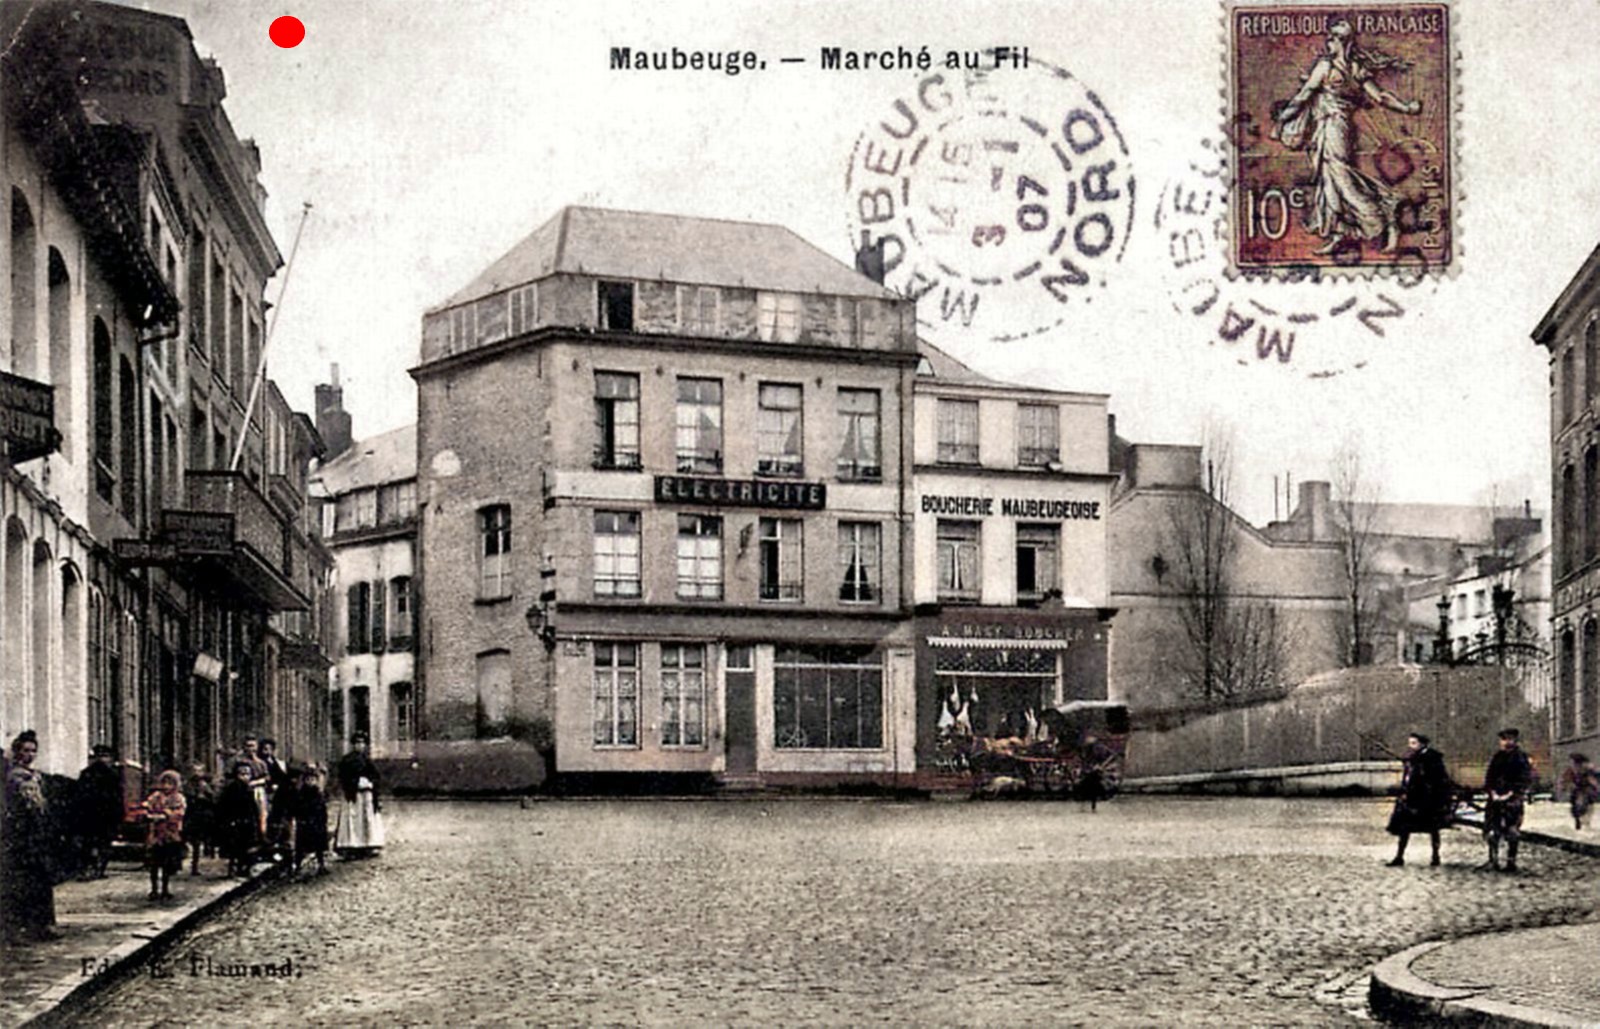 Maubeuge, le marché ax fils en 1907